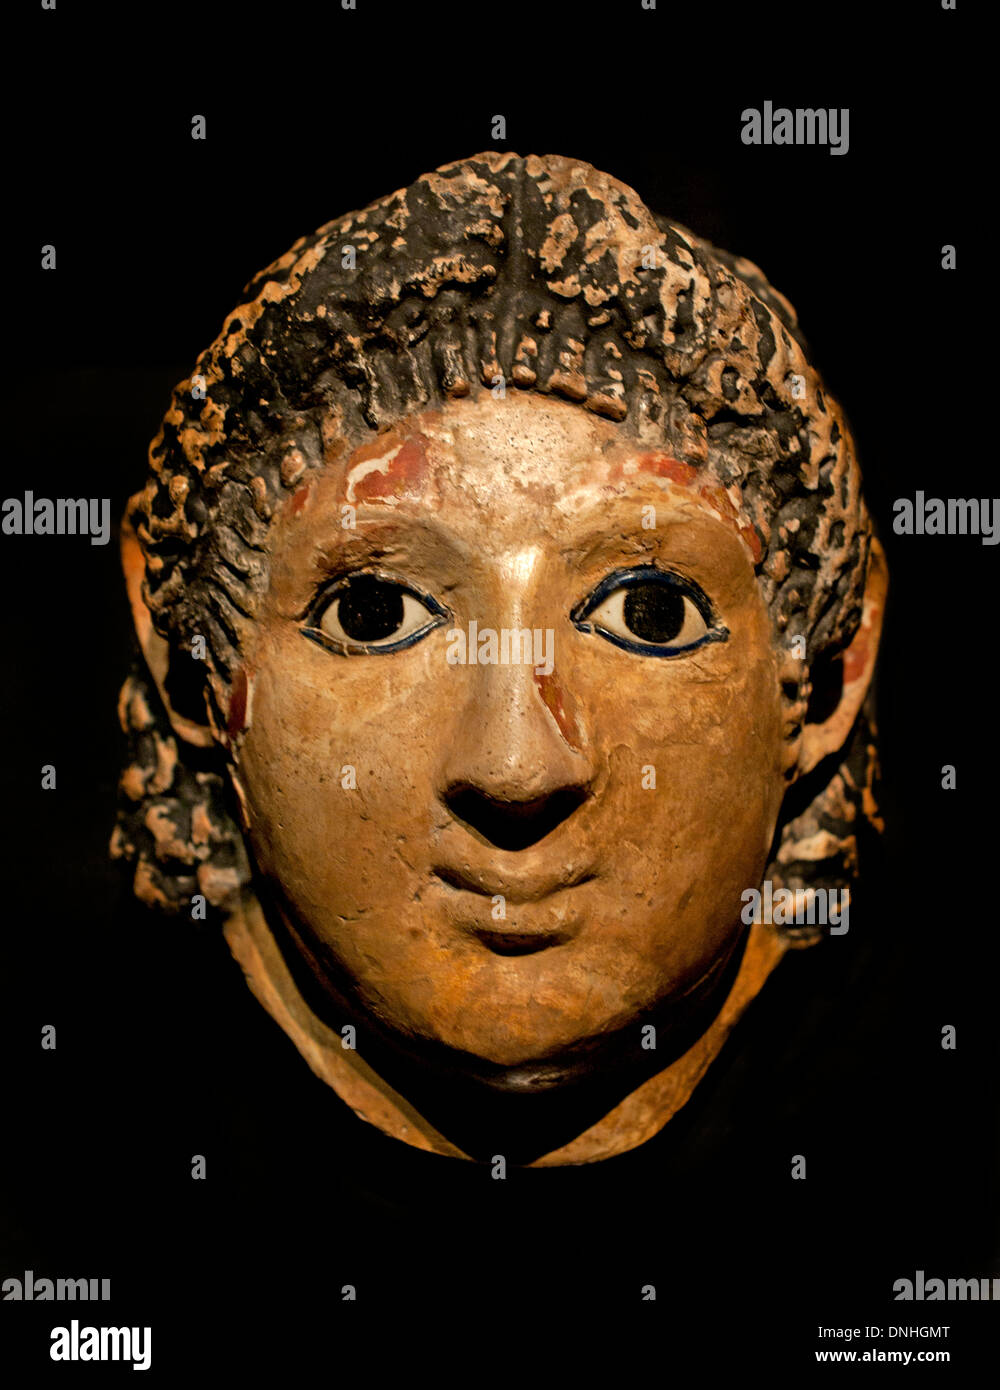 Masque de momie d'une jeune femme avec des yeux de verre marqueté époque Romaine 100 Masque égyptien Egypte AD Banque D'Images